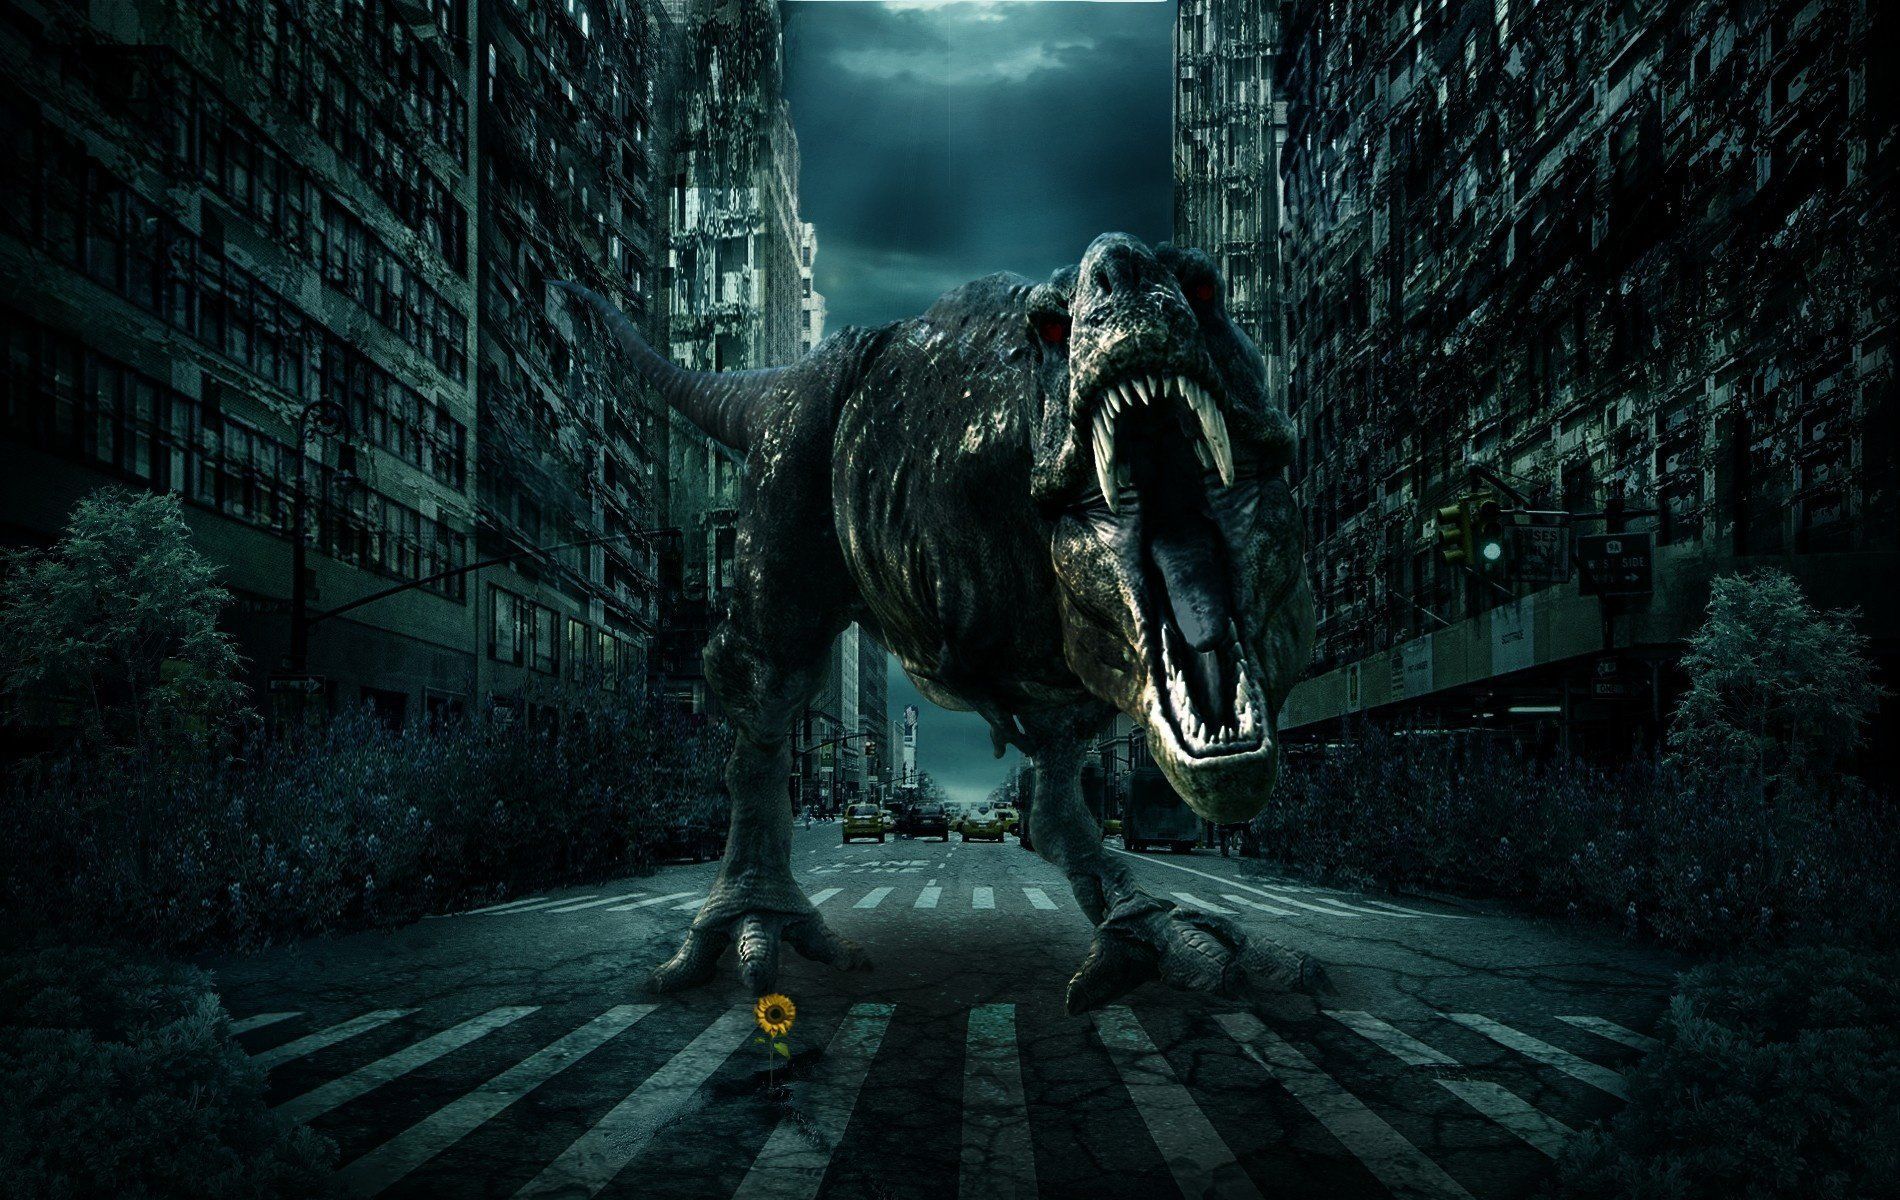 City road dinosaur 3d fantasy monster wallpaper | 1900x1200 ...